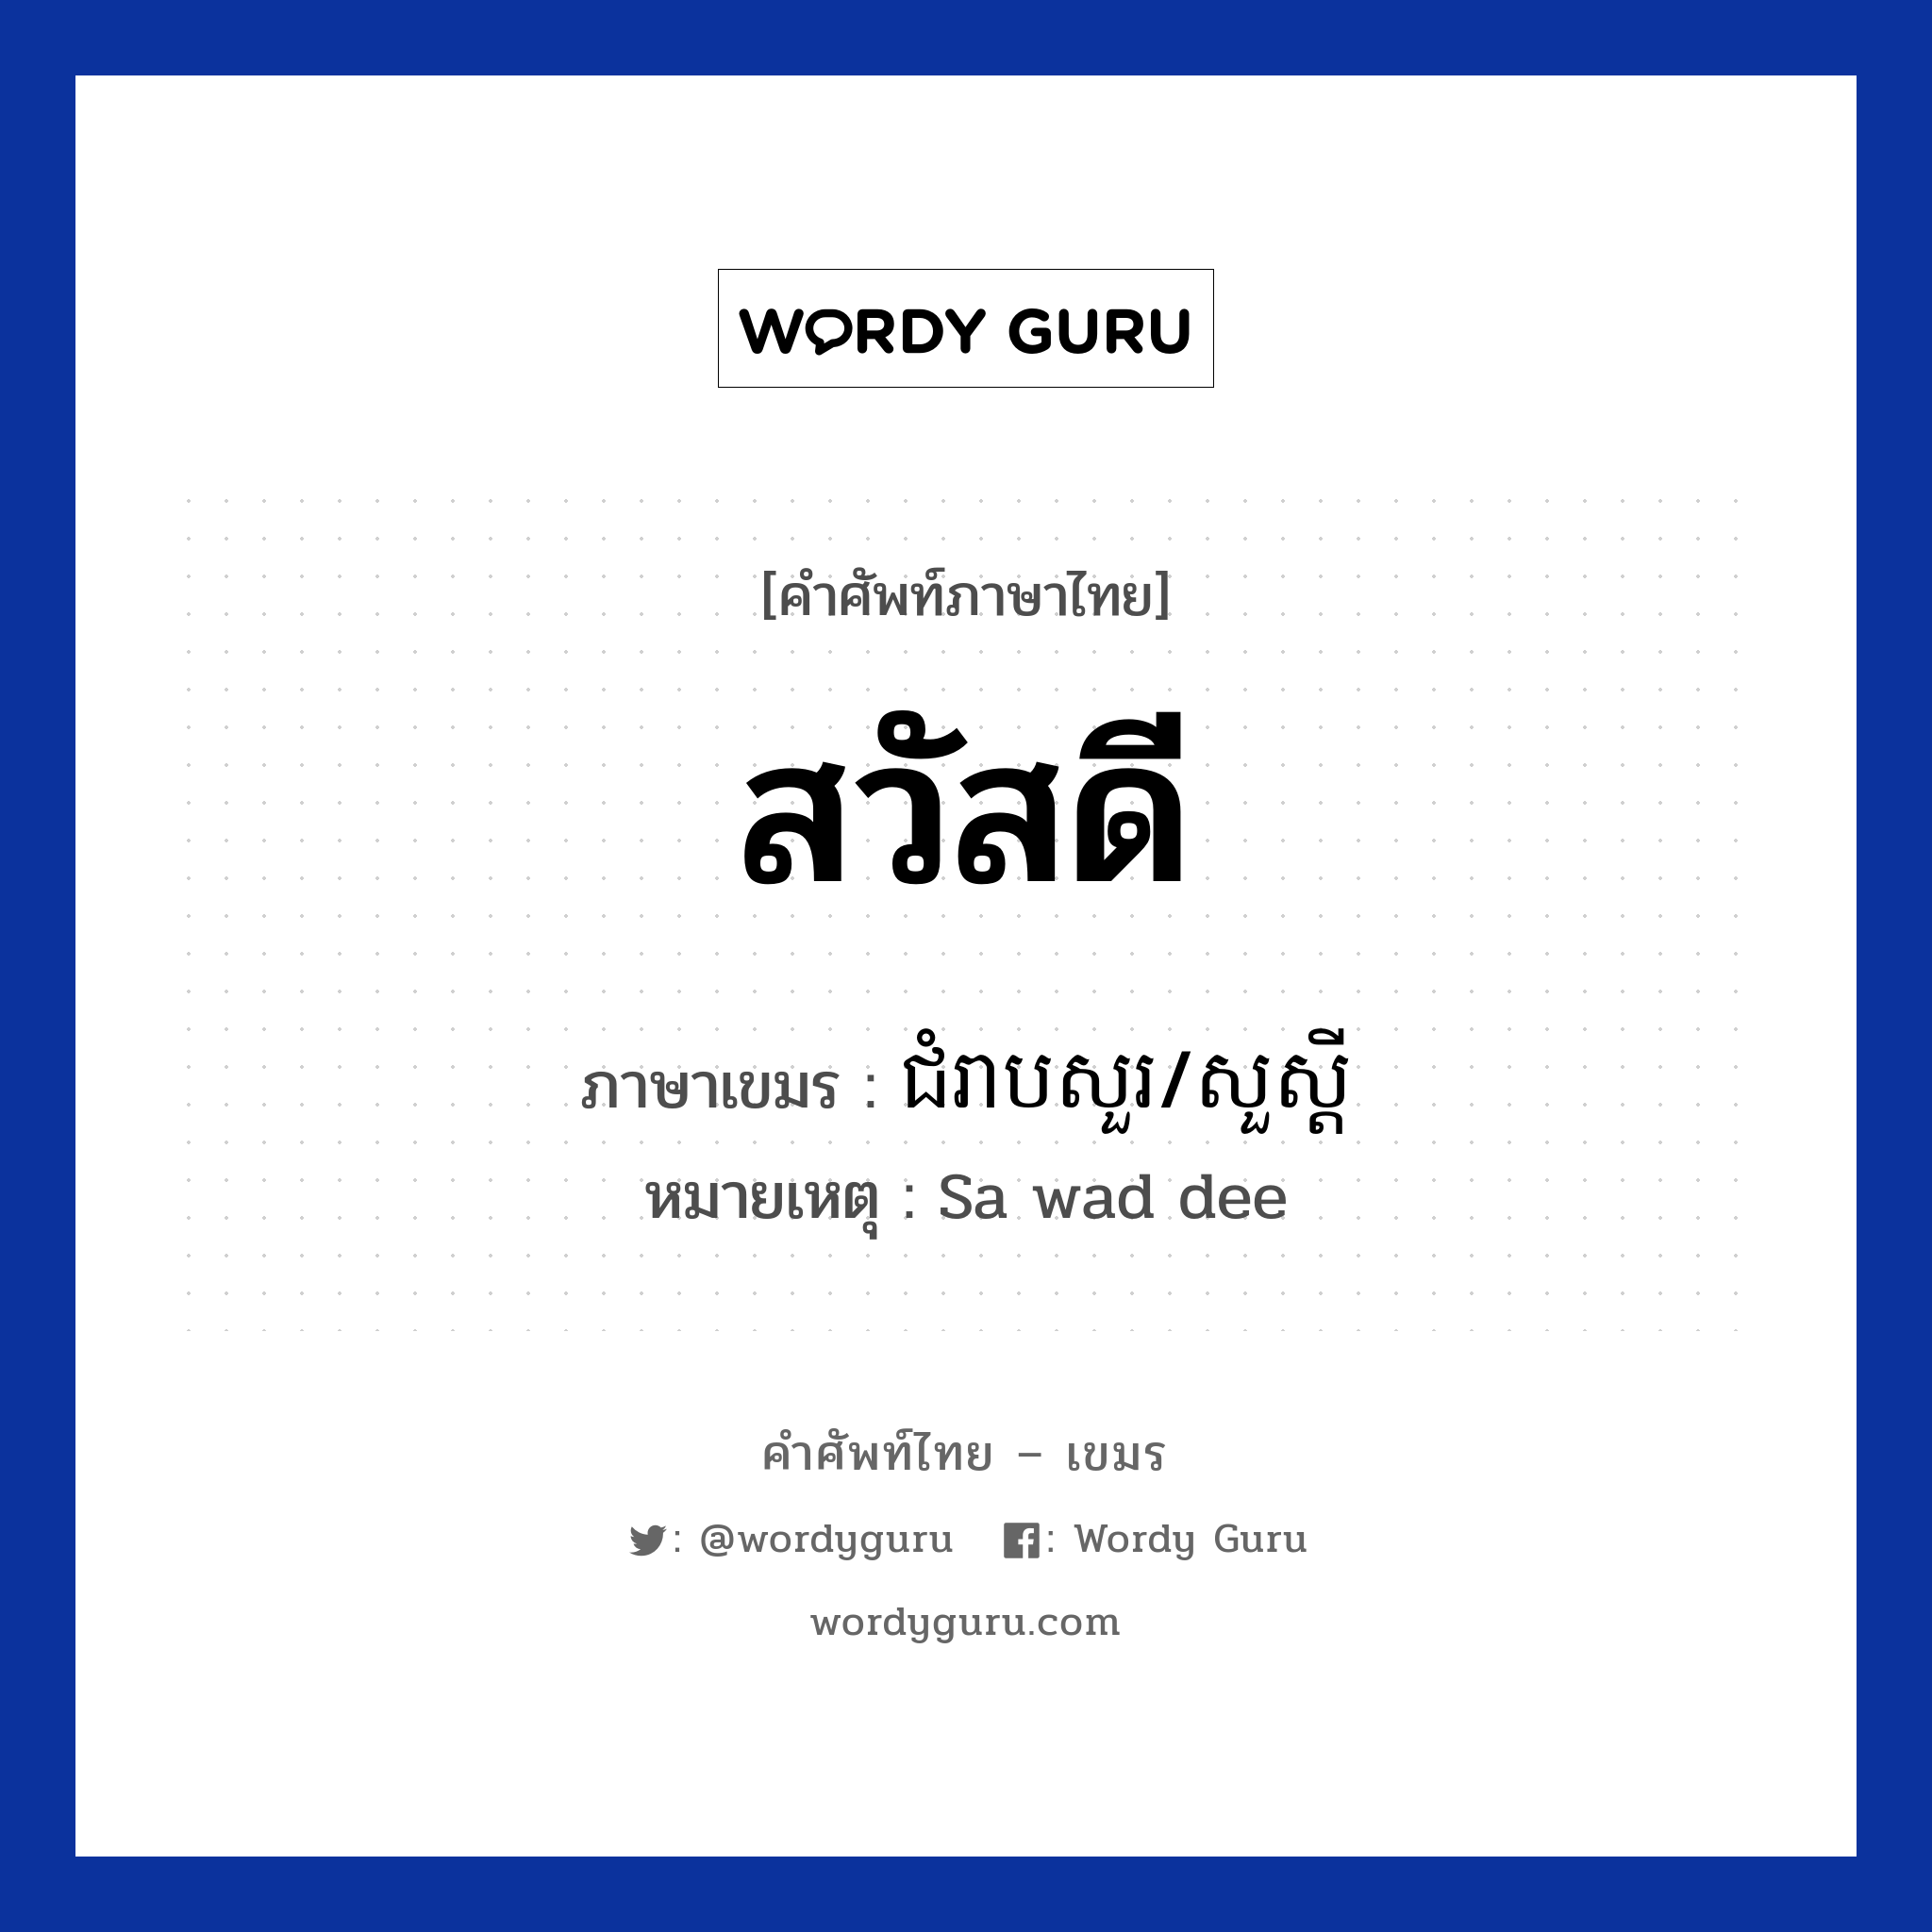 สวัสดี ภาษาเขมรคืออะไร, คำศัพท์ภาษาไทย - เขมร สวัสดี ภาษาเขมร ជំរាបសួរ/សួស្ដី หมวด ทักทาย หมายเหตุ Sa wad dee Chom reab sour หมวด ทักทาย